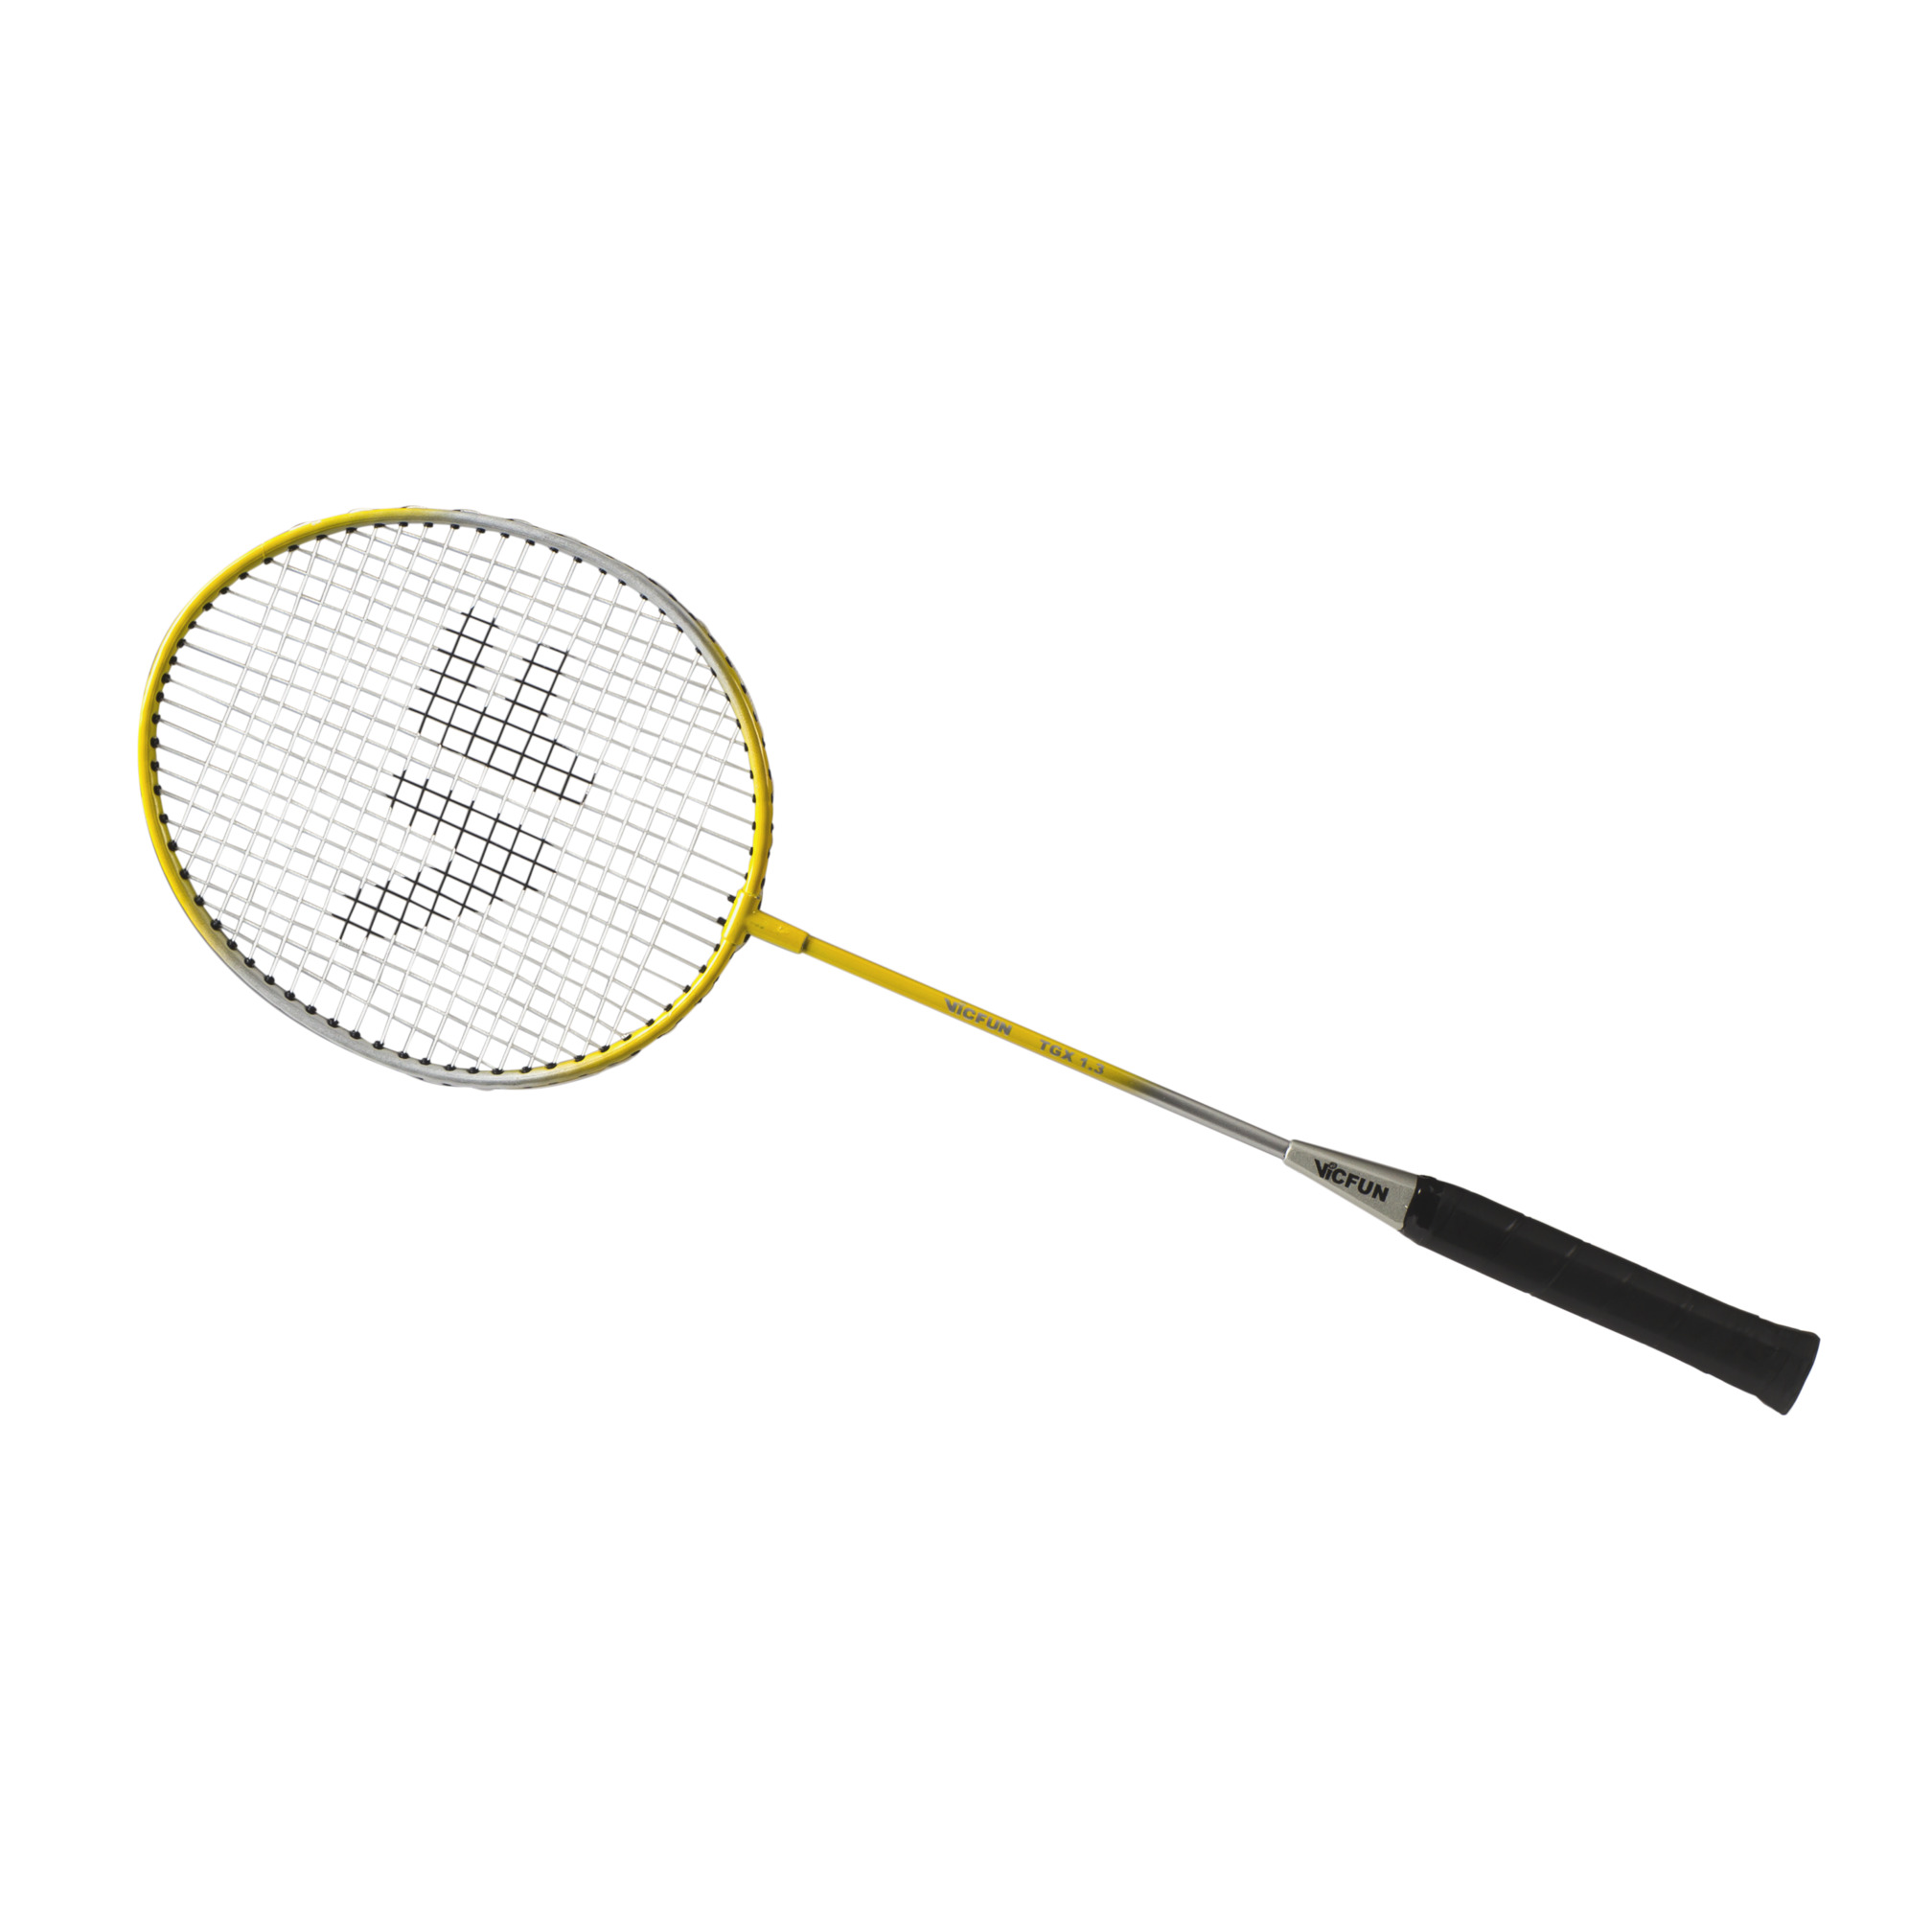 Badmintonracket recreatie/school